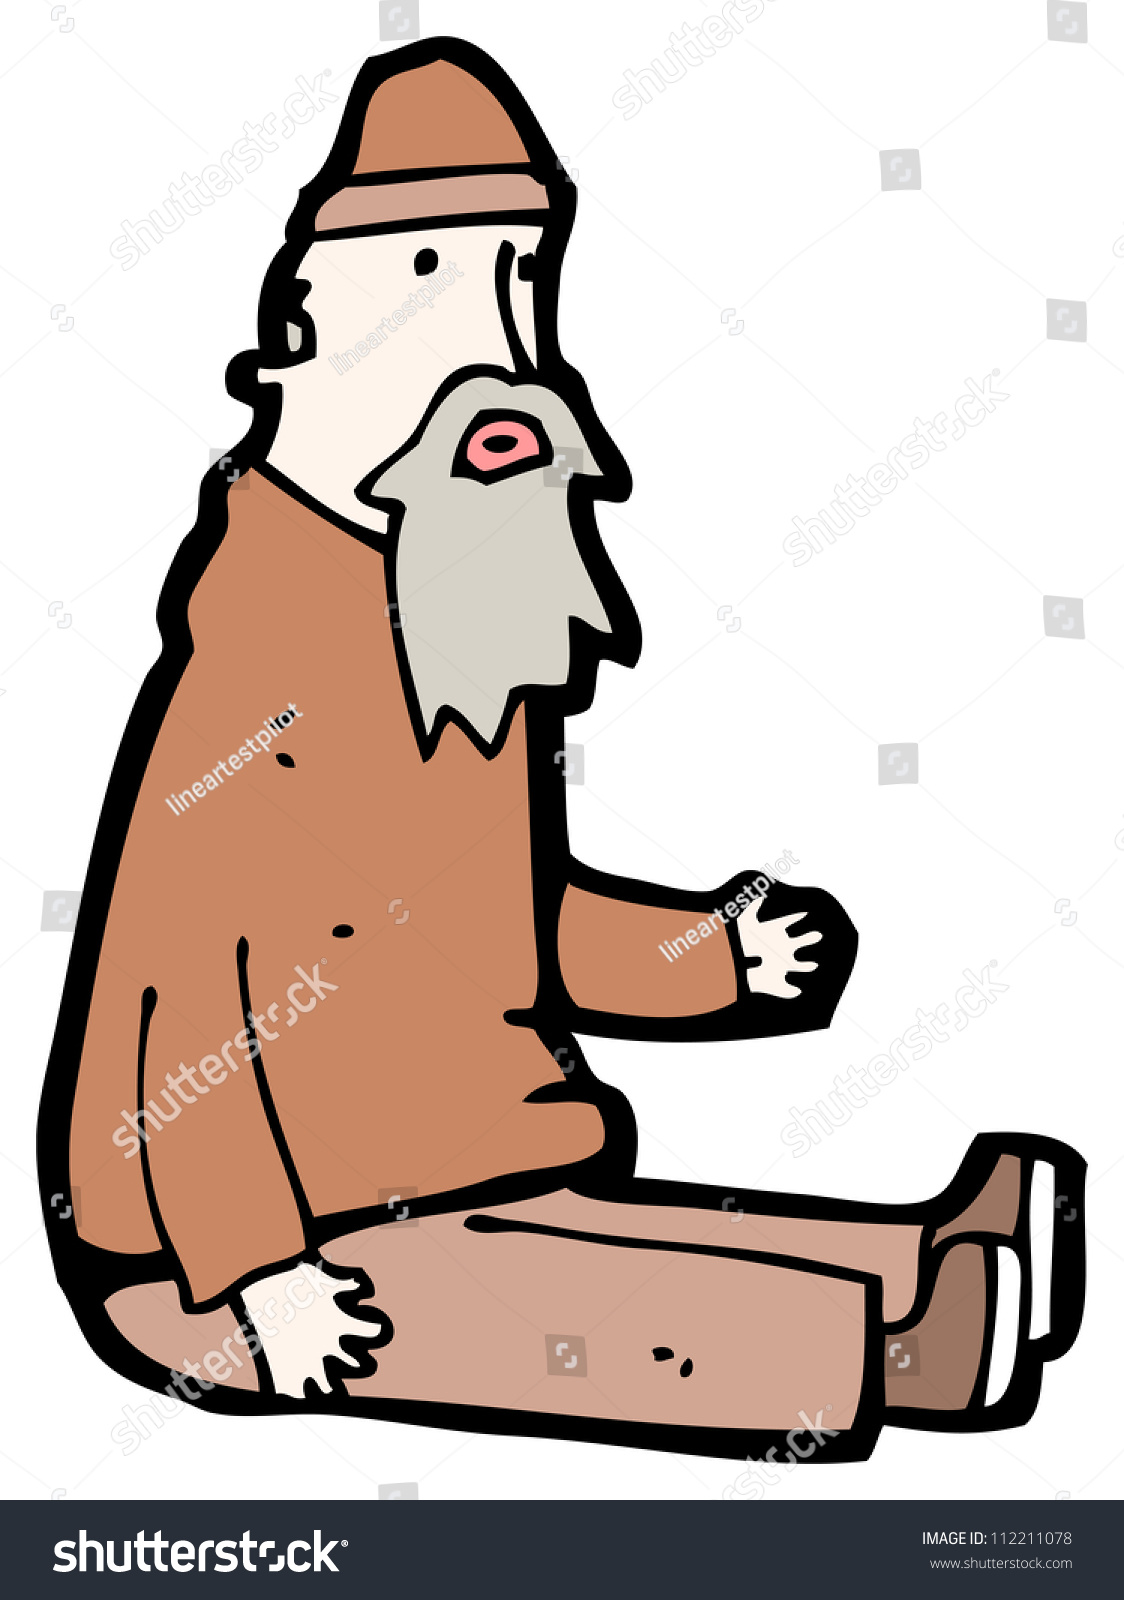 Cartoon Homeless Man Stock Photo 112211078 : Shutterstock